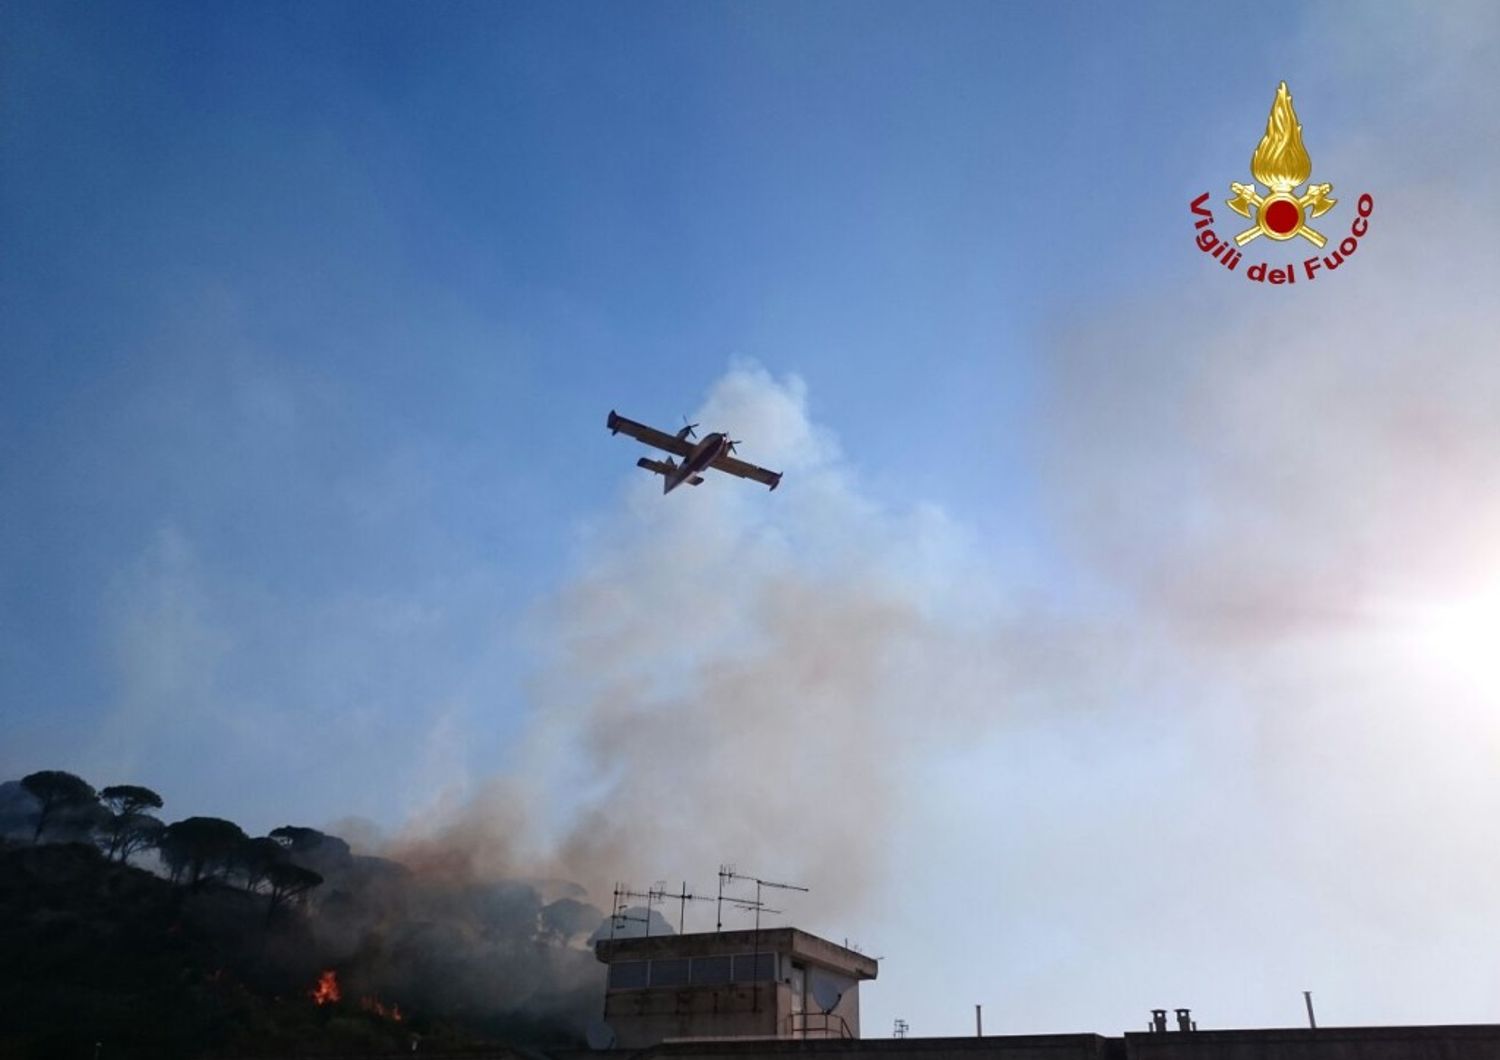 Fiorello pompiere (a modo suo) contro i roghi a Messina